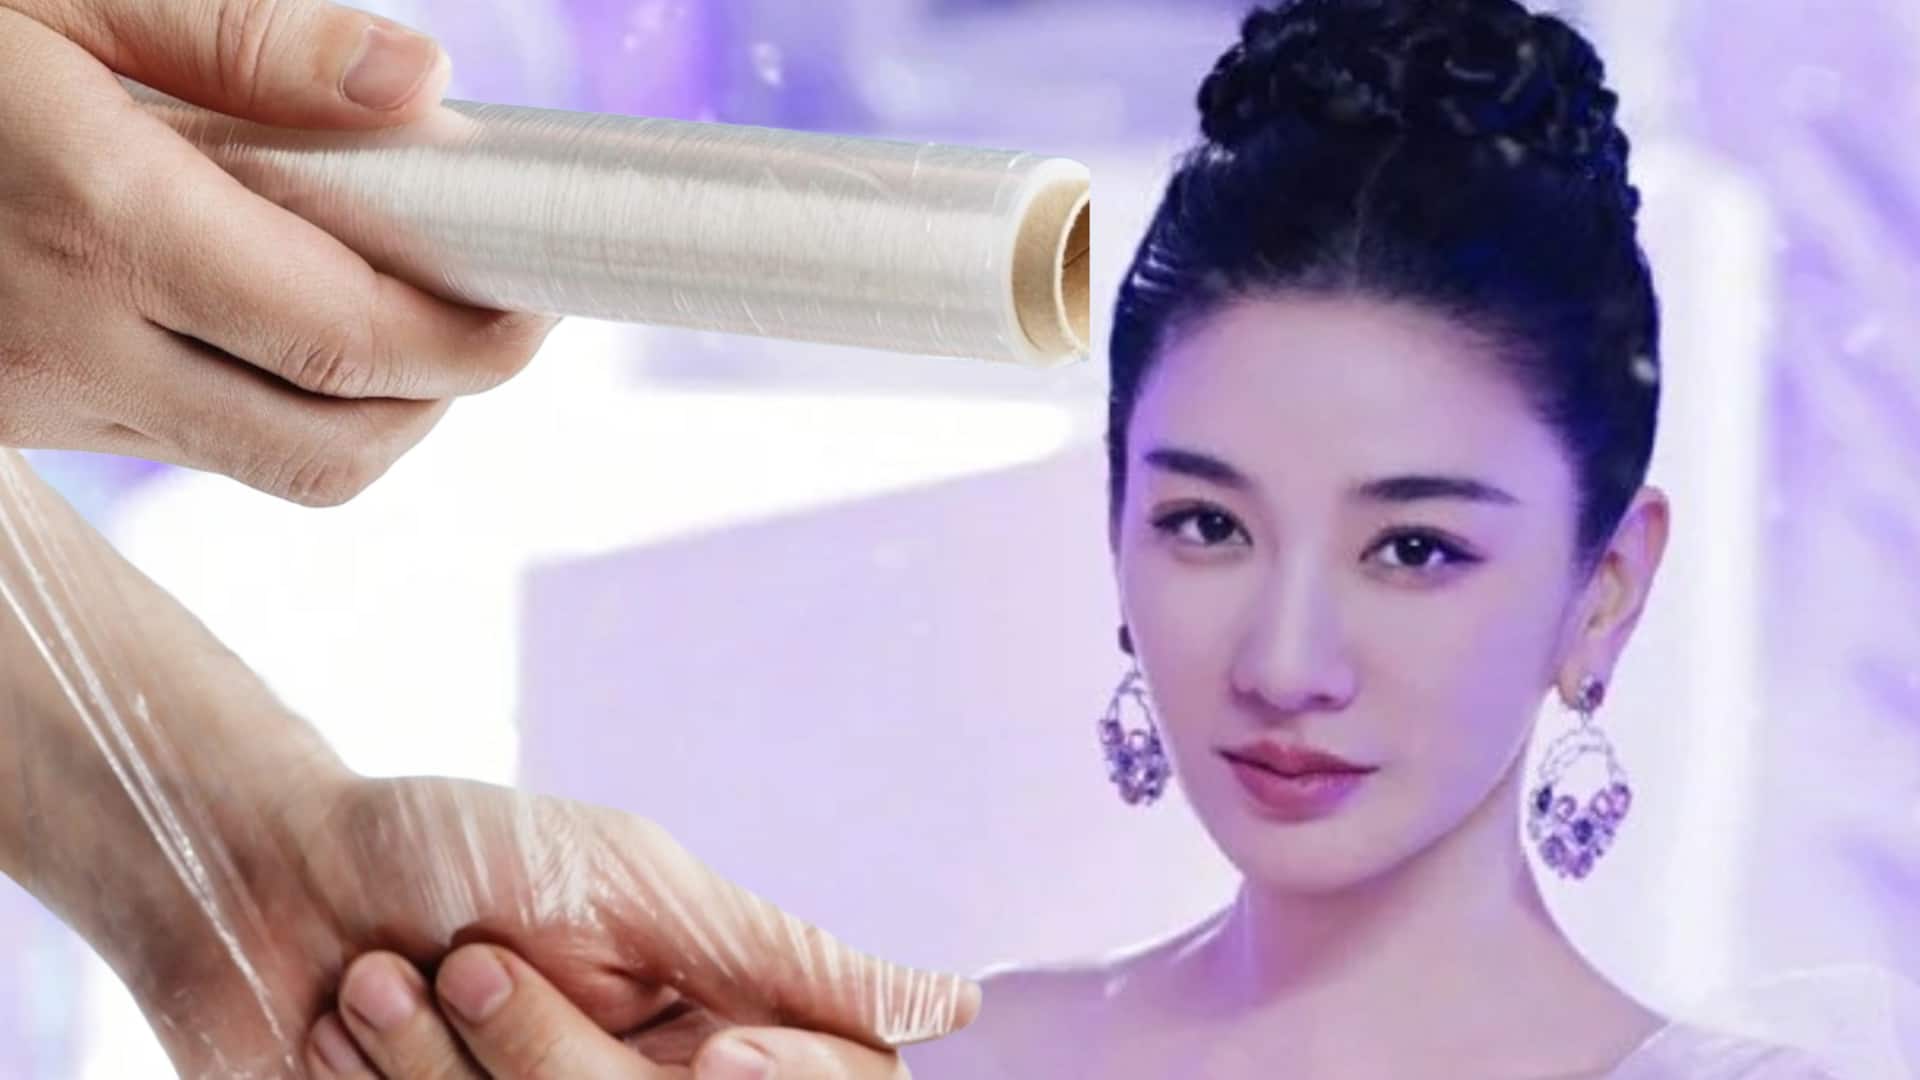 चीन: पतला दिखने के लिए अभिनेत्री ने अपनाई अनोखी तरकीब, कमर पर लपेटी प्लास्टिक की परतें